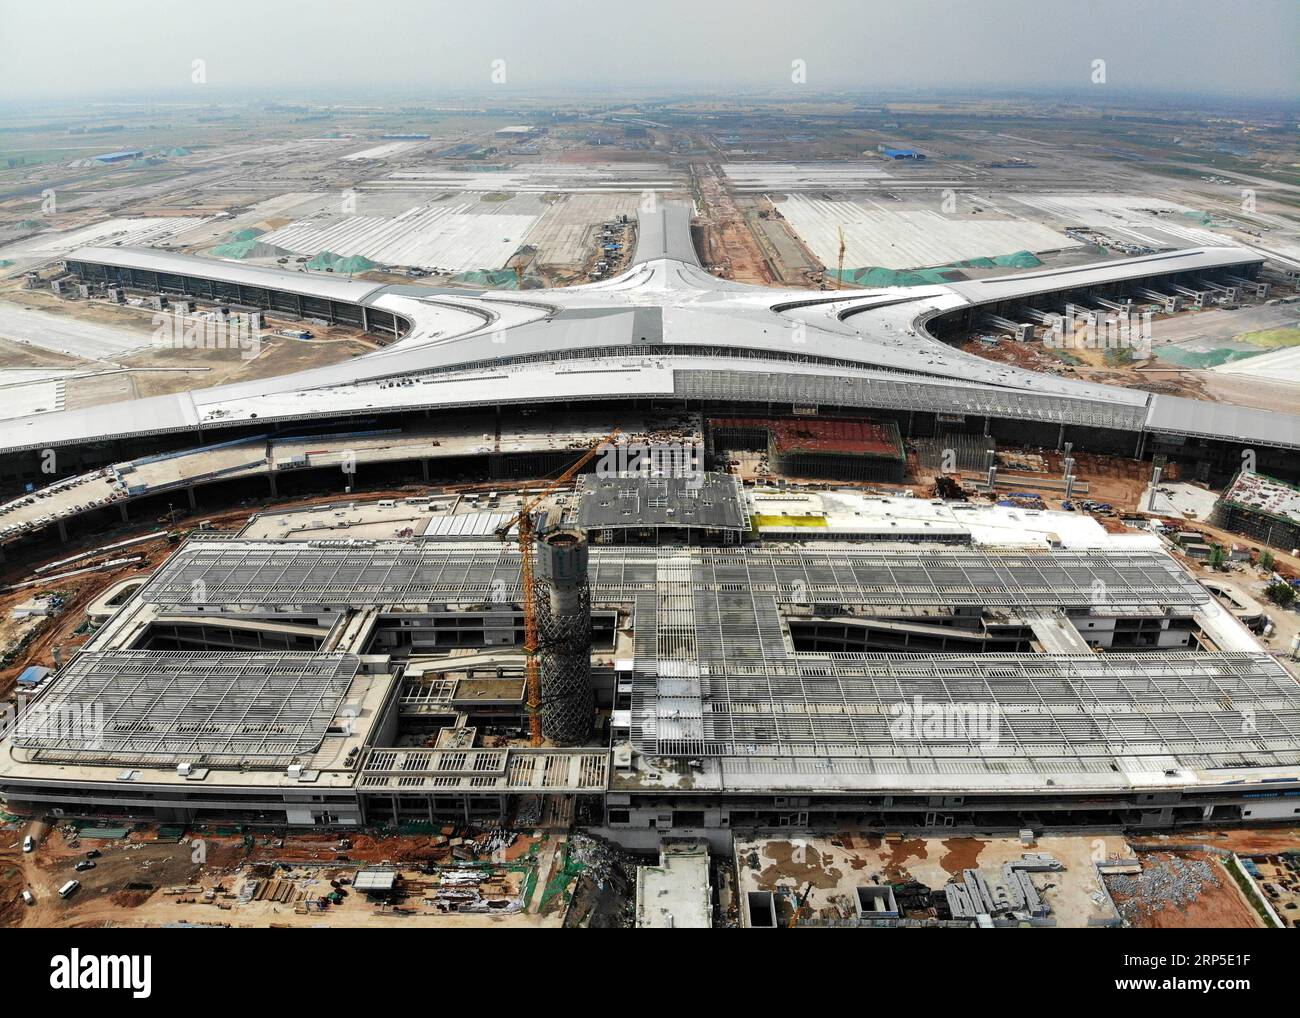 (181211) -- PECHINO, 11 dicembre 2018 -- foto scattata il 15 giugno 2018 mostra l'aeroporto internazionale di Qingdao Jiaodong in costruzione a Qingdao, nella provincia dello Shandong della Cina orientale. Lunedì scorso, l'Amministrazione dell'aviazione civile cinese ha pubblicato un piano d'azione volto a rendere l'industria dell'aviazione civile cinese una delle migliori al mondo entro il 2050. Nell'ambito del piano, dal 2021 al 2035, la Cina rafforzerà in modo globale la forza della sua industria dell'aviazione civile, non solo assumendo il ruolo di leader nel trasporto aereo, ma anche di avere le compagnie aeree e i centri aerei più competitivi al mondo, servizi aerei avanzati Foto Stock